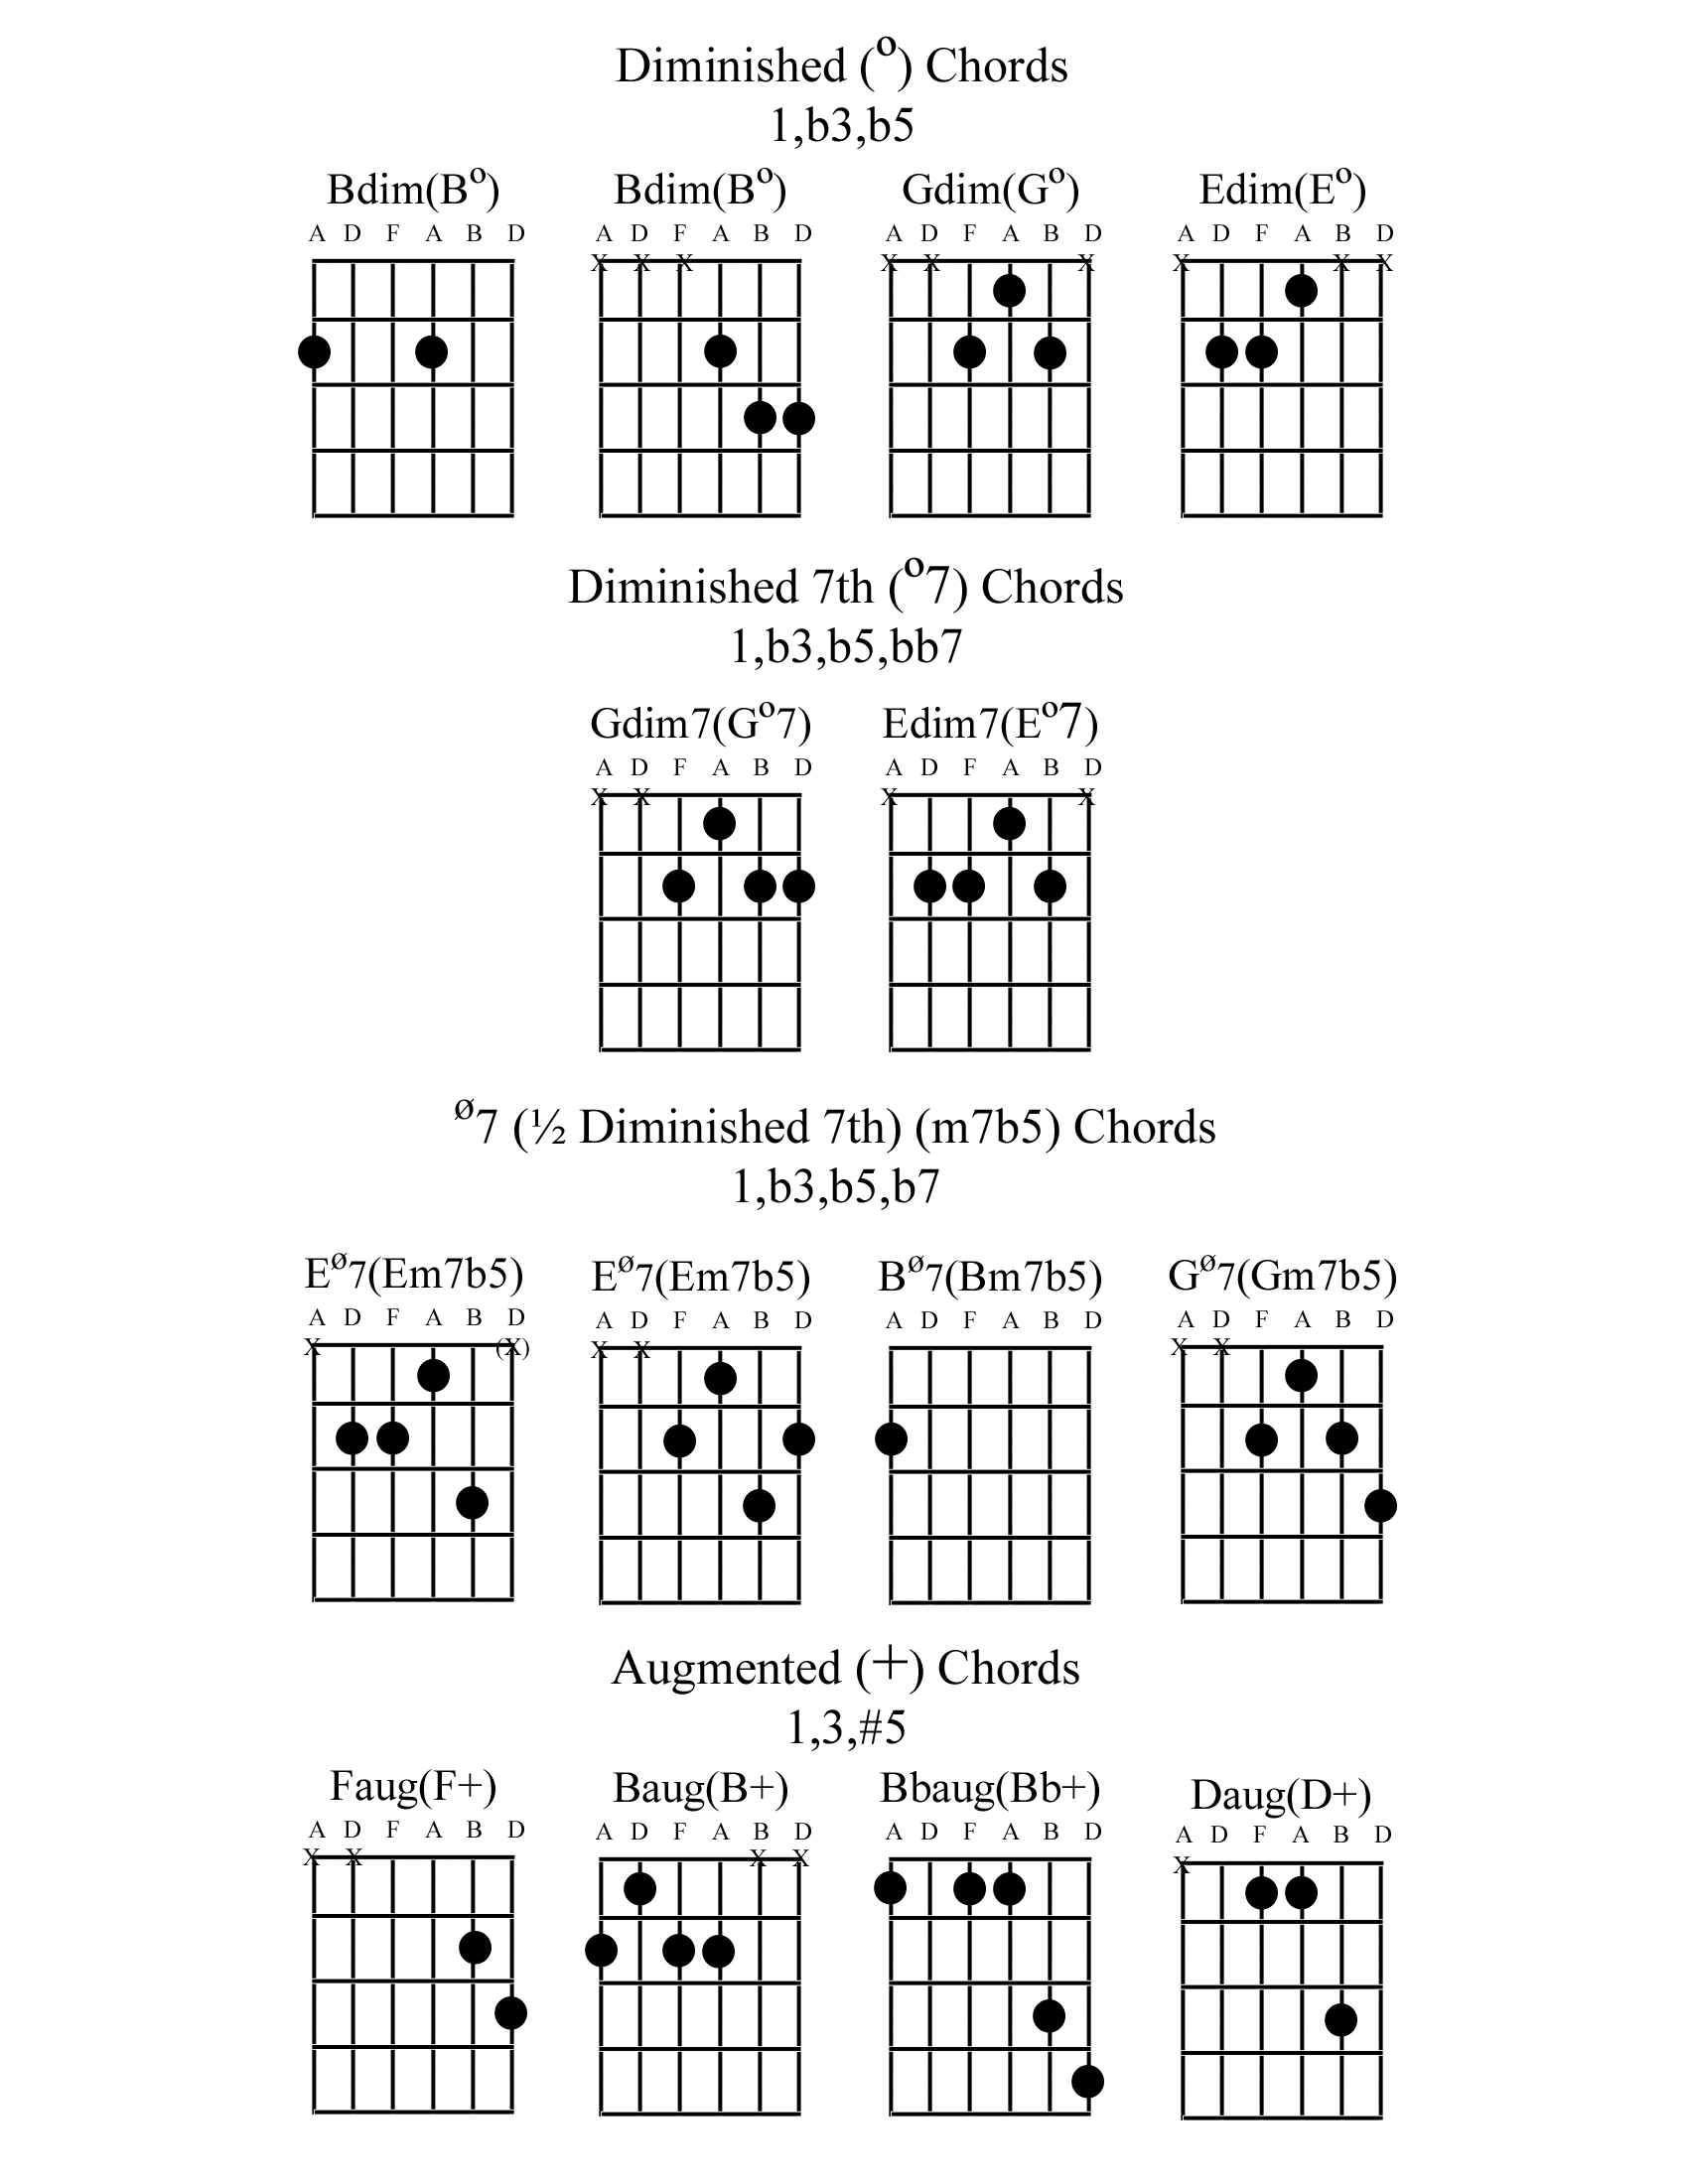 Diminished Chords - Diminished 7th Chords - 1/2 Diminished 7th Chords - Augmented Chords